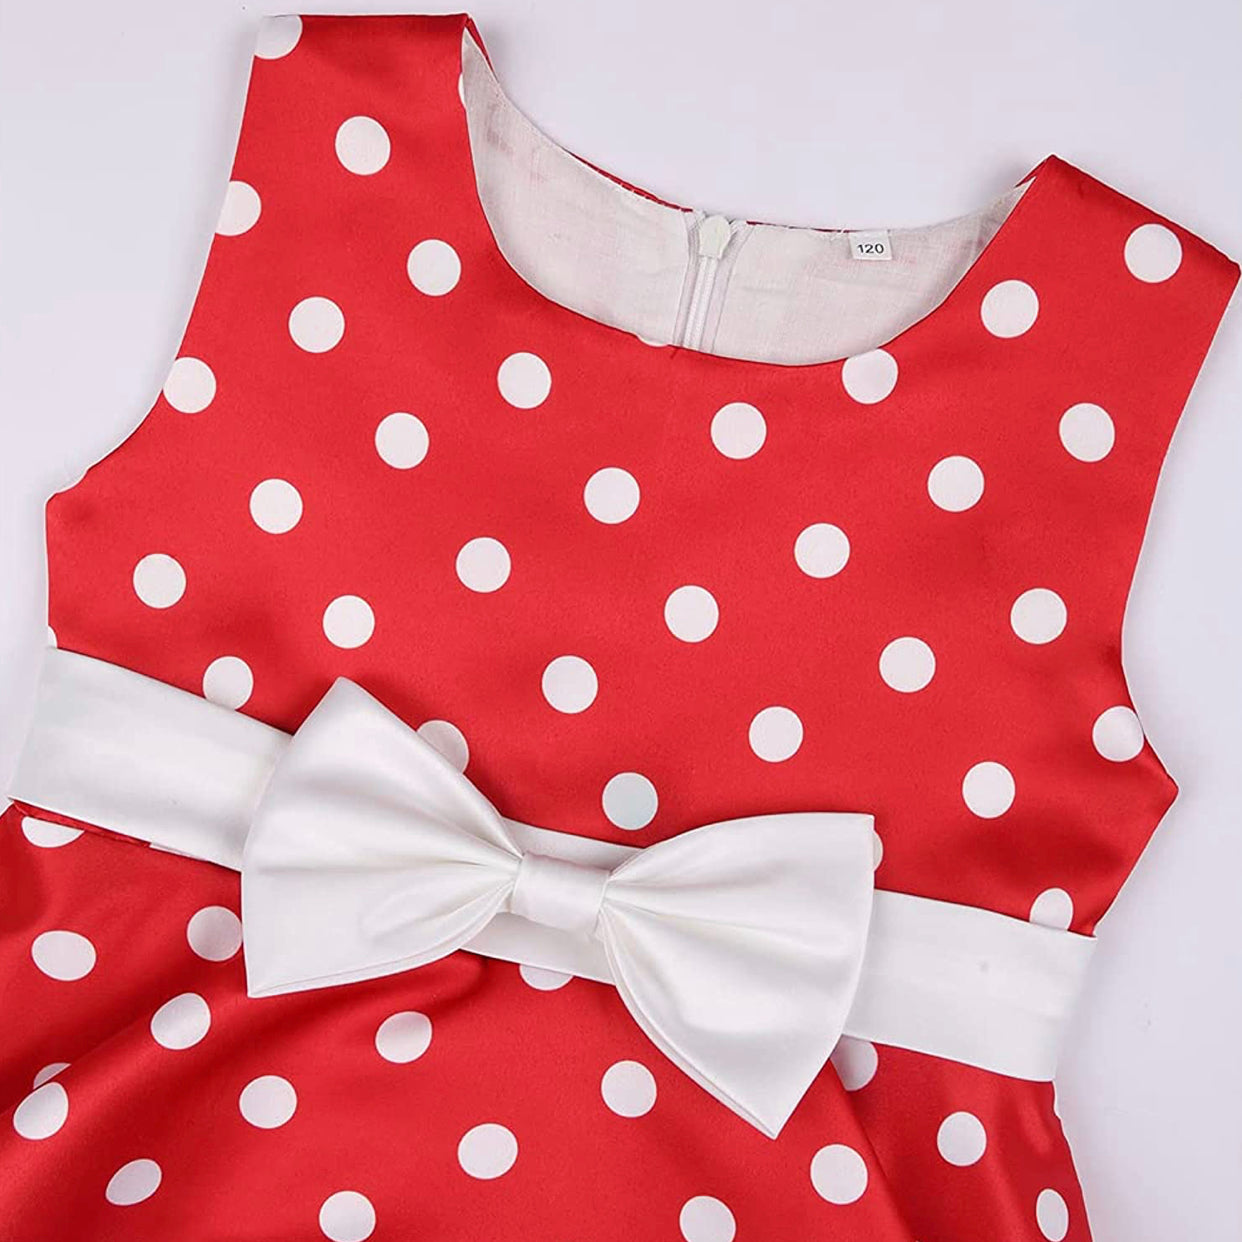 Little Girl’s Formal Red Polka Dot Print Dress, Sizes 2T - 9 years